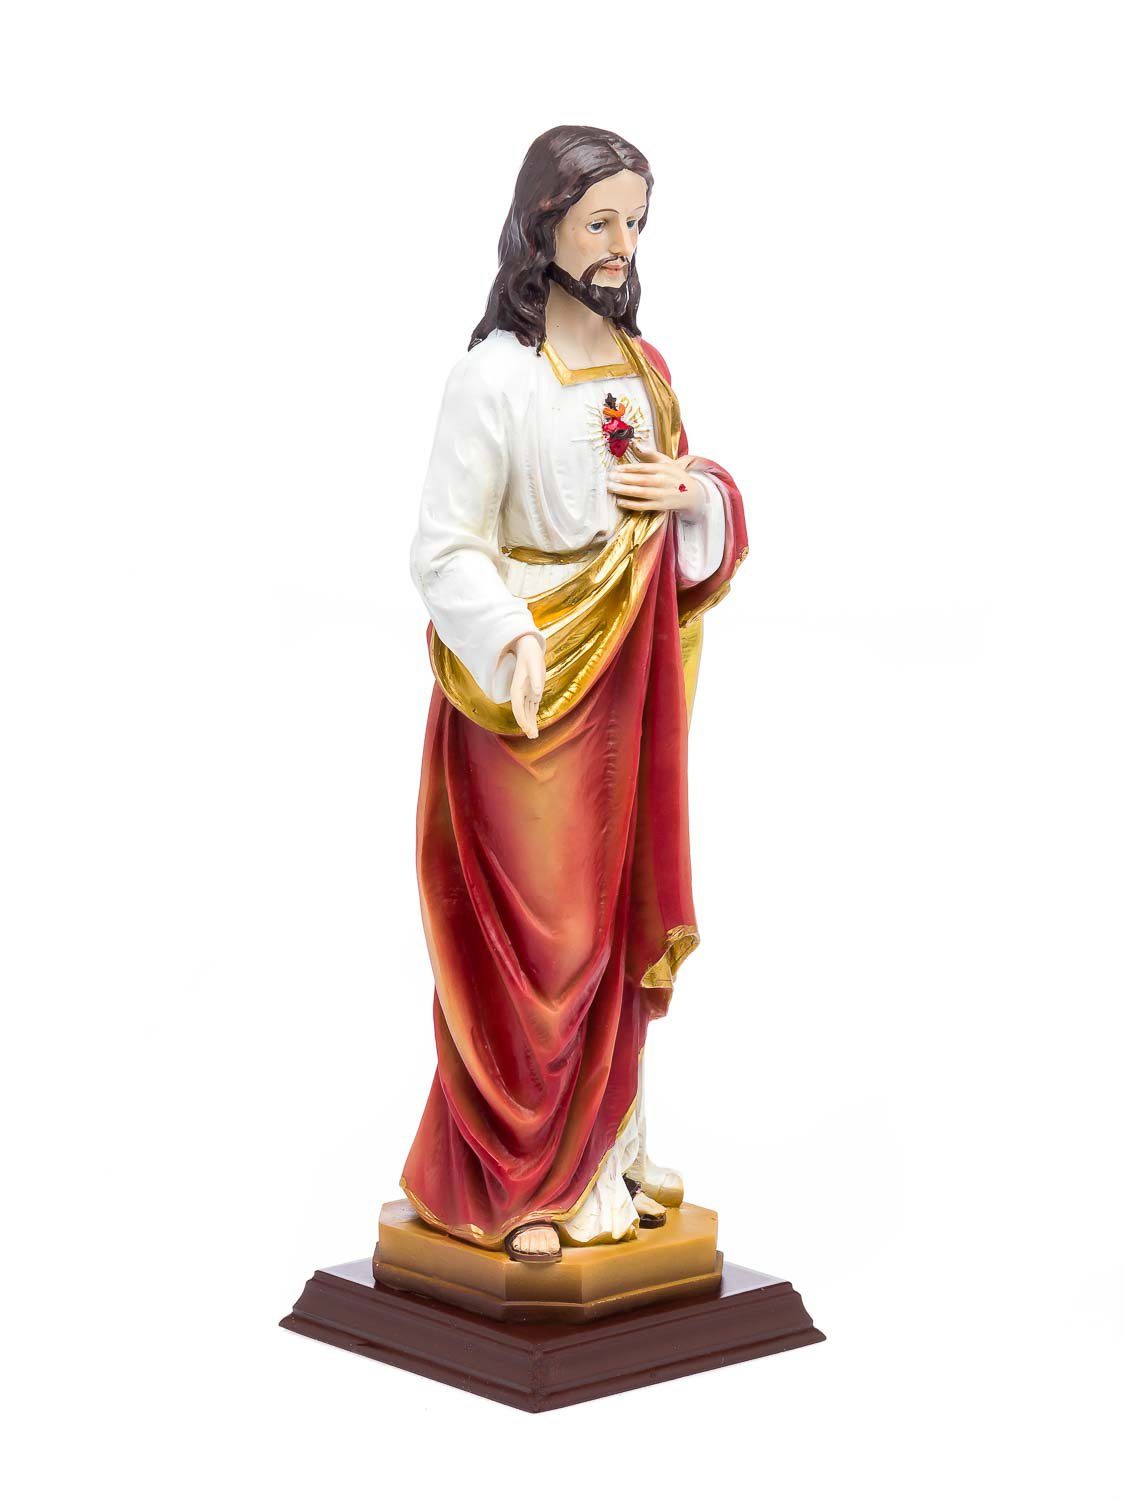 Aubaho Dekofigur Heiligenfigur Jesus Figur Skulptur Madonna sculpture 31cm